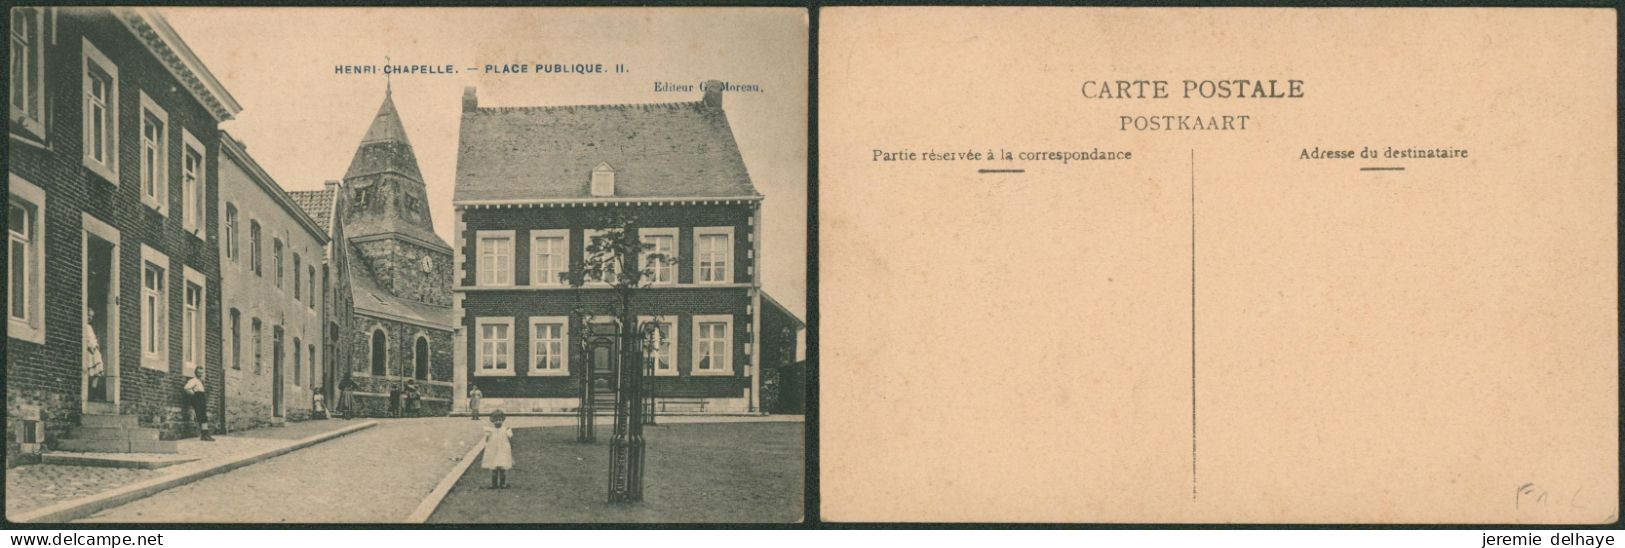 Carte Postale - Henri-Chapelle : Place Publique II (Editeur G. Moreau) - Welkenraedt